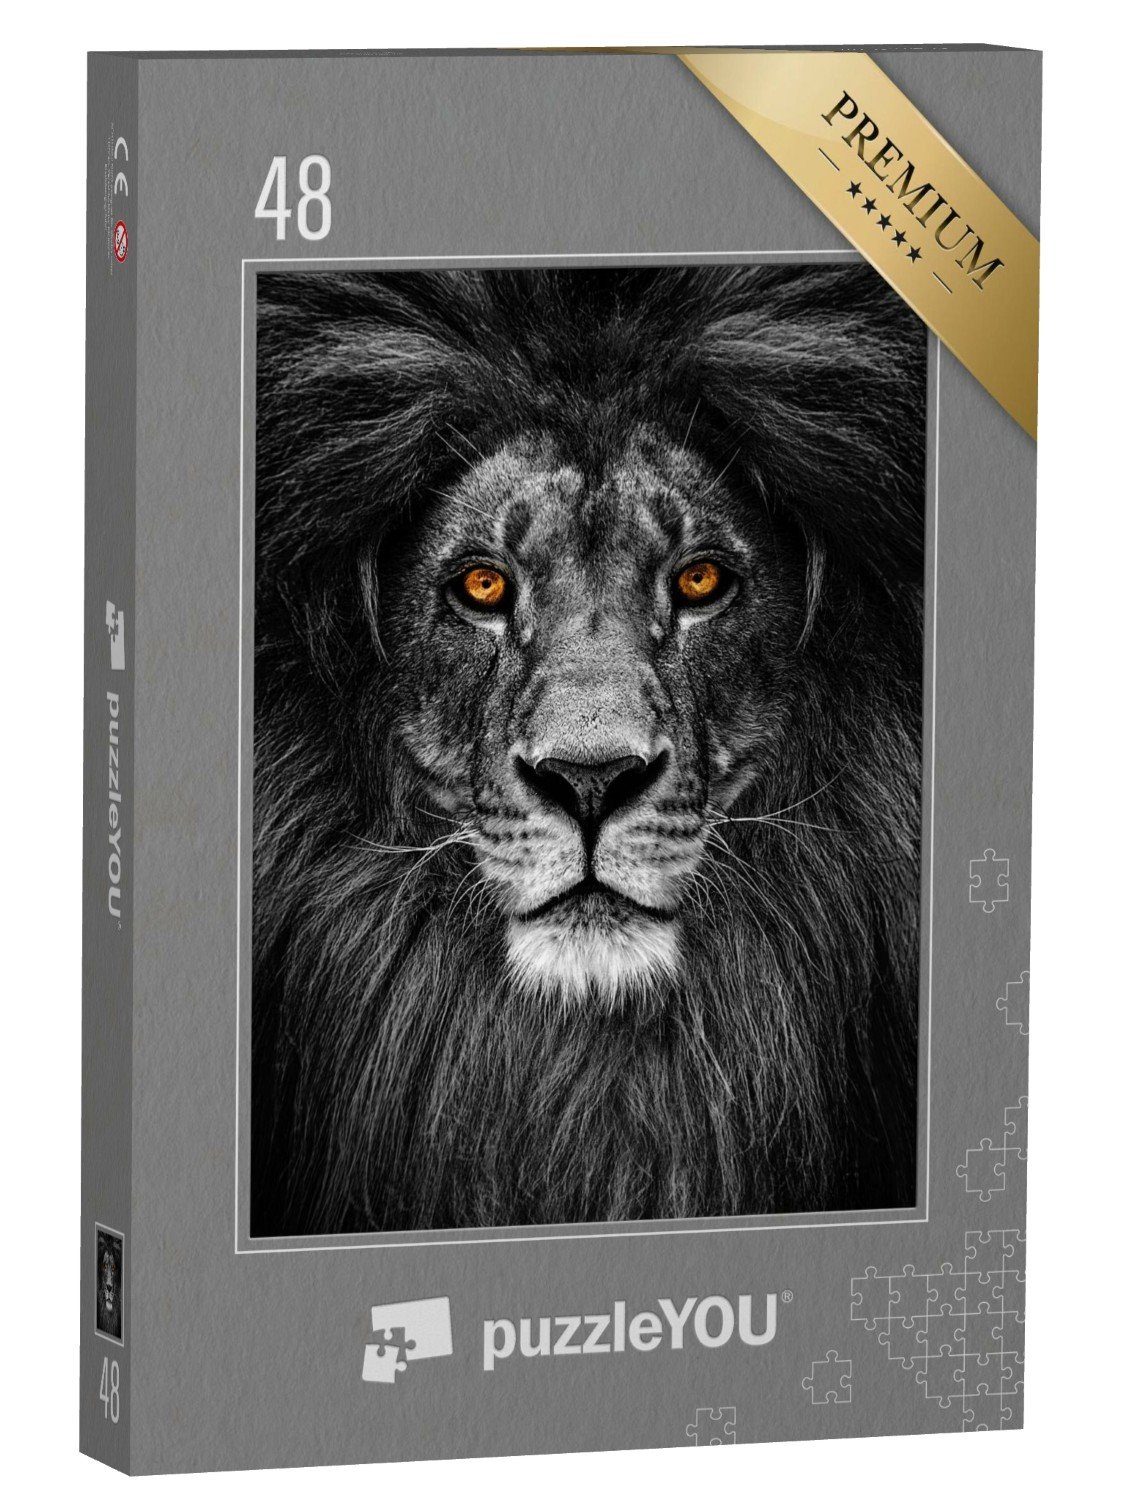 puzzleYOU Puzzle Porträt eines Löwen mit feurigem Blick, 48 Puzzleteile,  puzzleYOU-Kollektionen Löwen, Raubtiere, Tiere in Savanne & Wüste